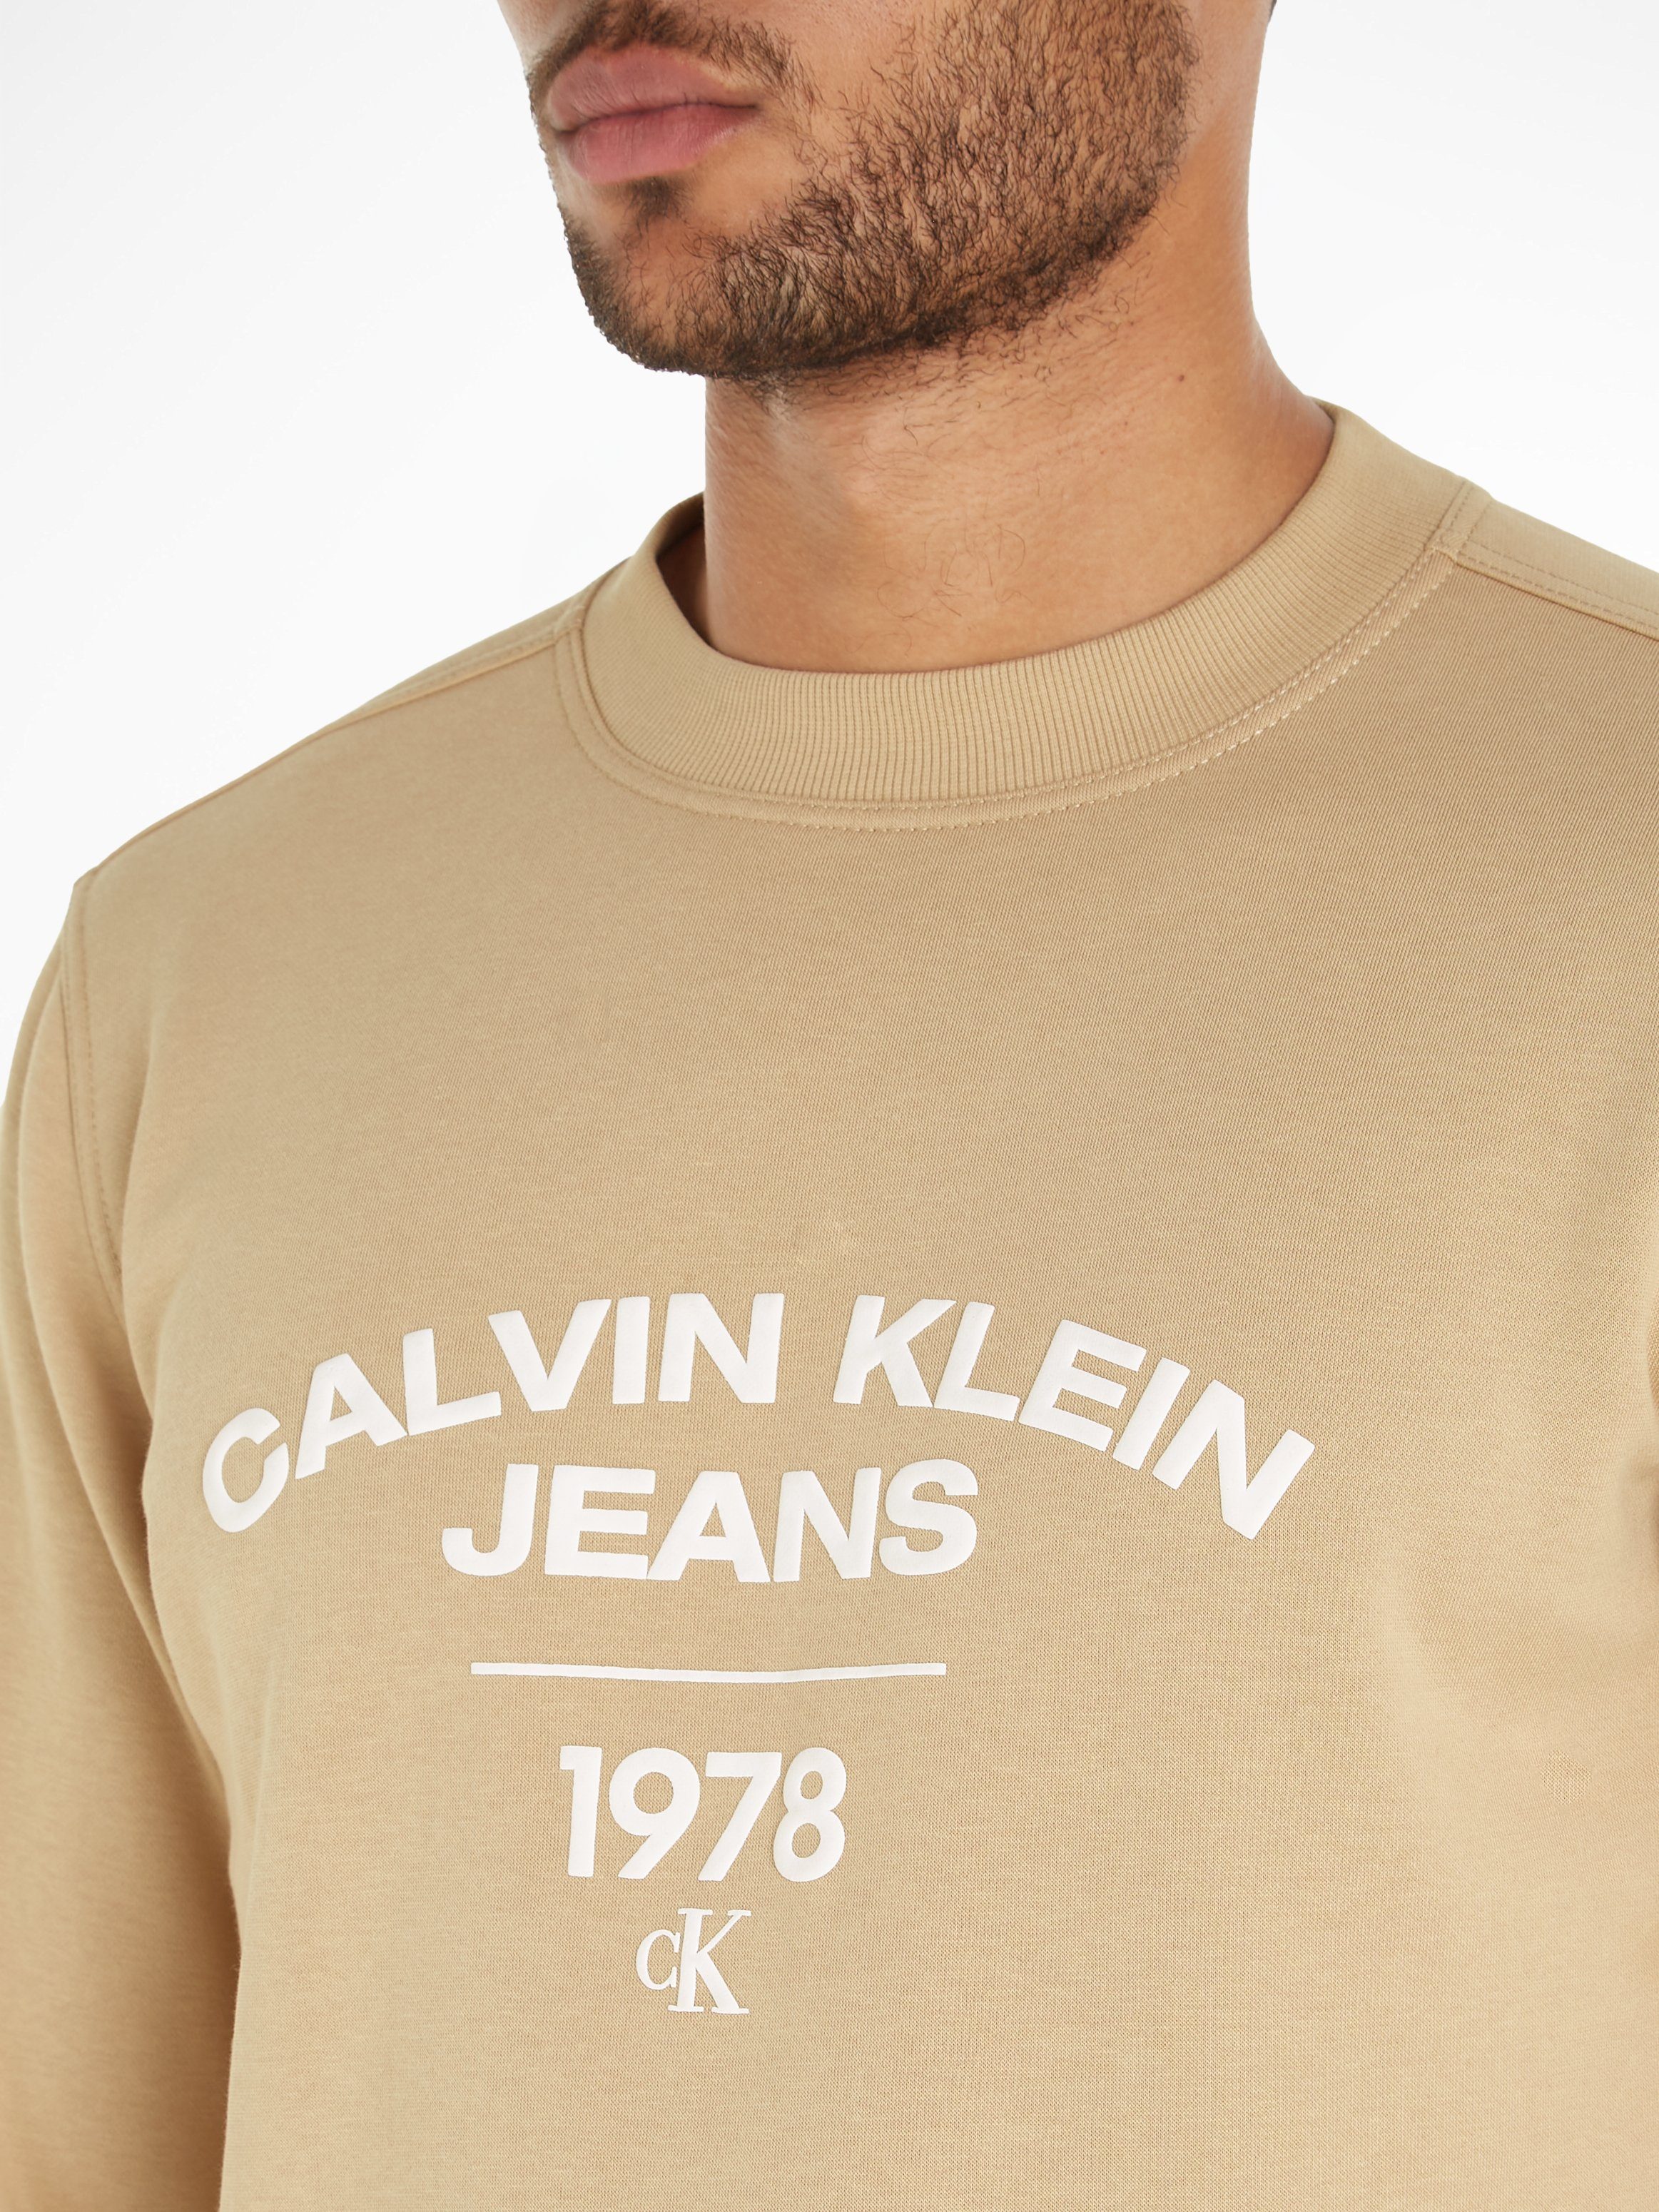 CURVE Sweatshirt Klein CREW Calvin Jeans NECK Travertine VARSITY